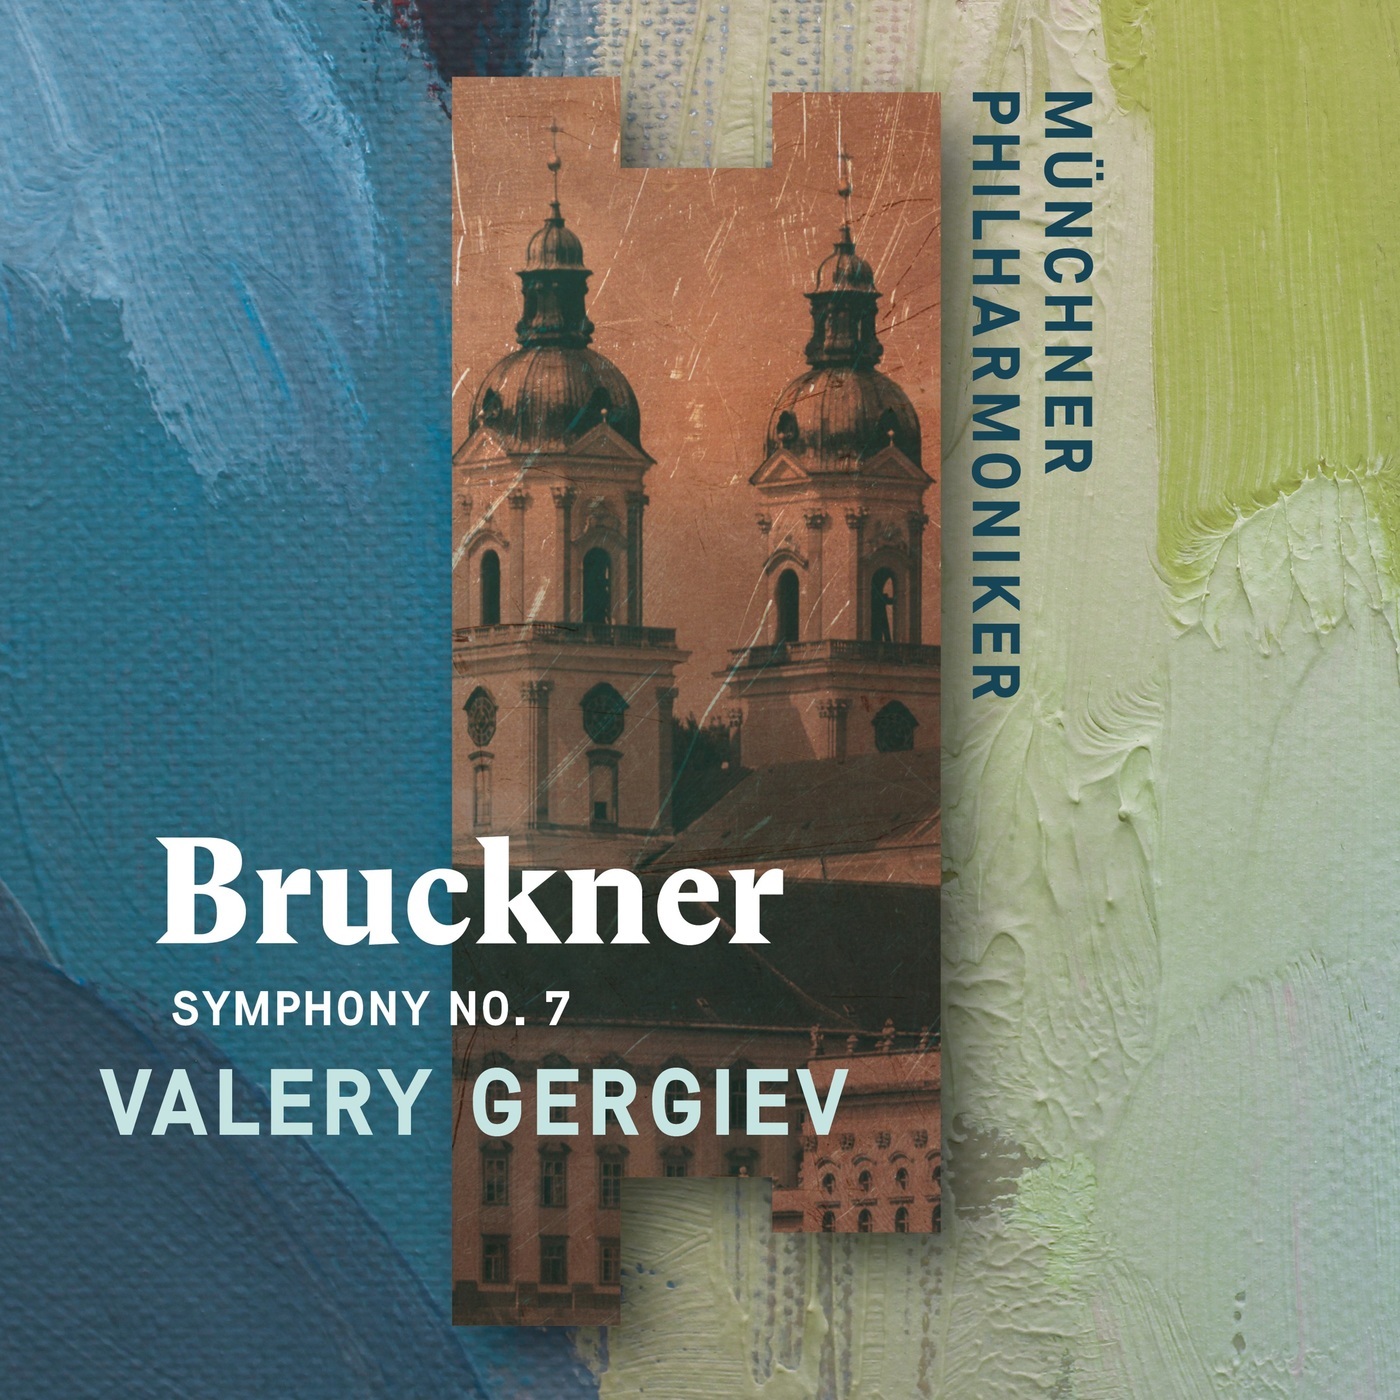 Valery Gergiev & Munich Philharmonic - Bruckner: Symphony No. 7 (2020) [FLAC 24bit/96kHz]